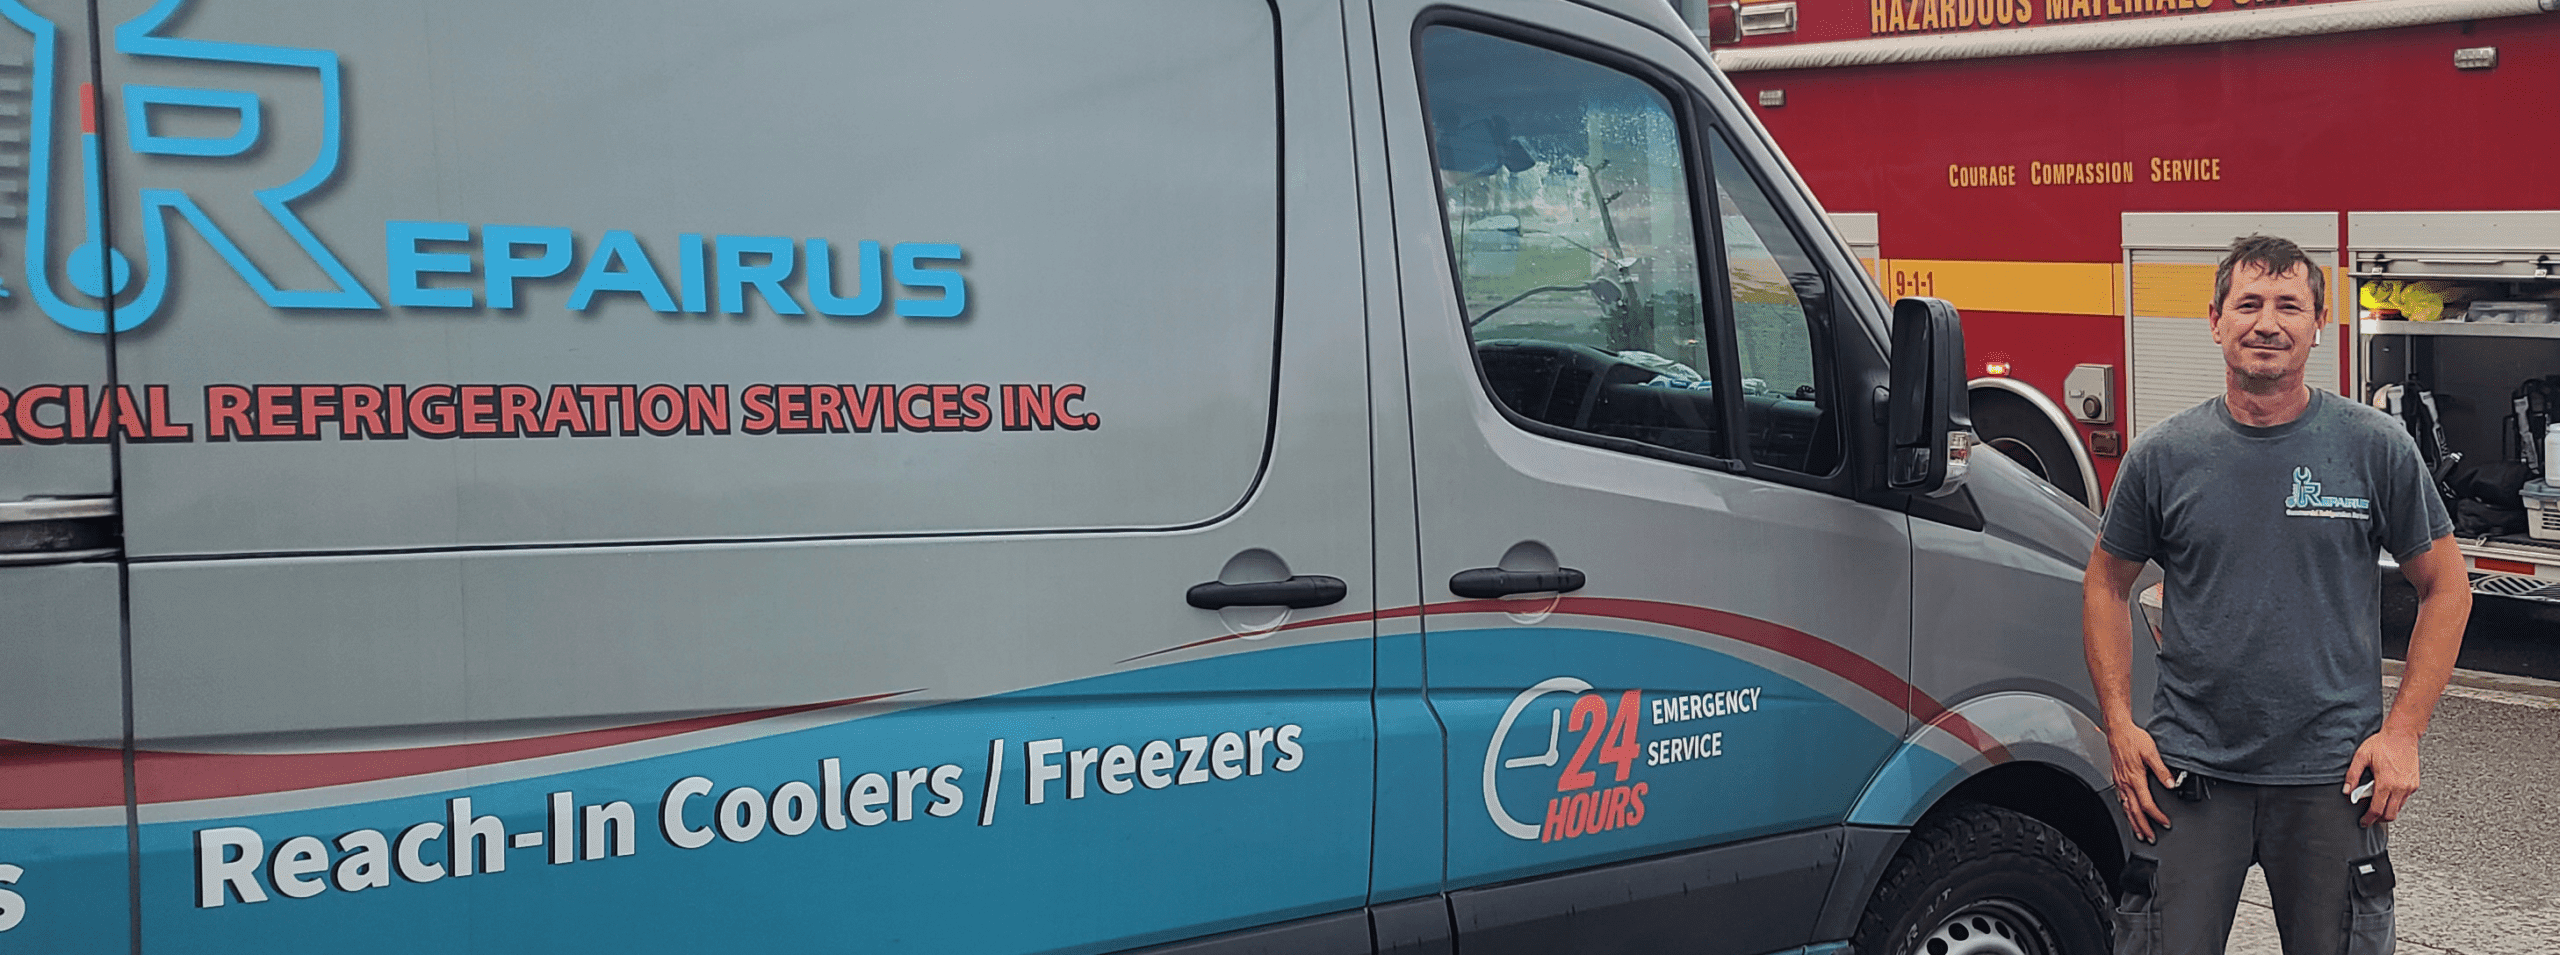 RepairUs Refrigeration Repair Services